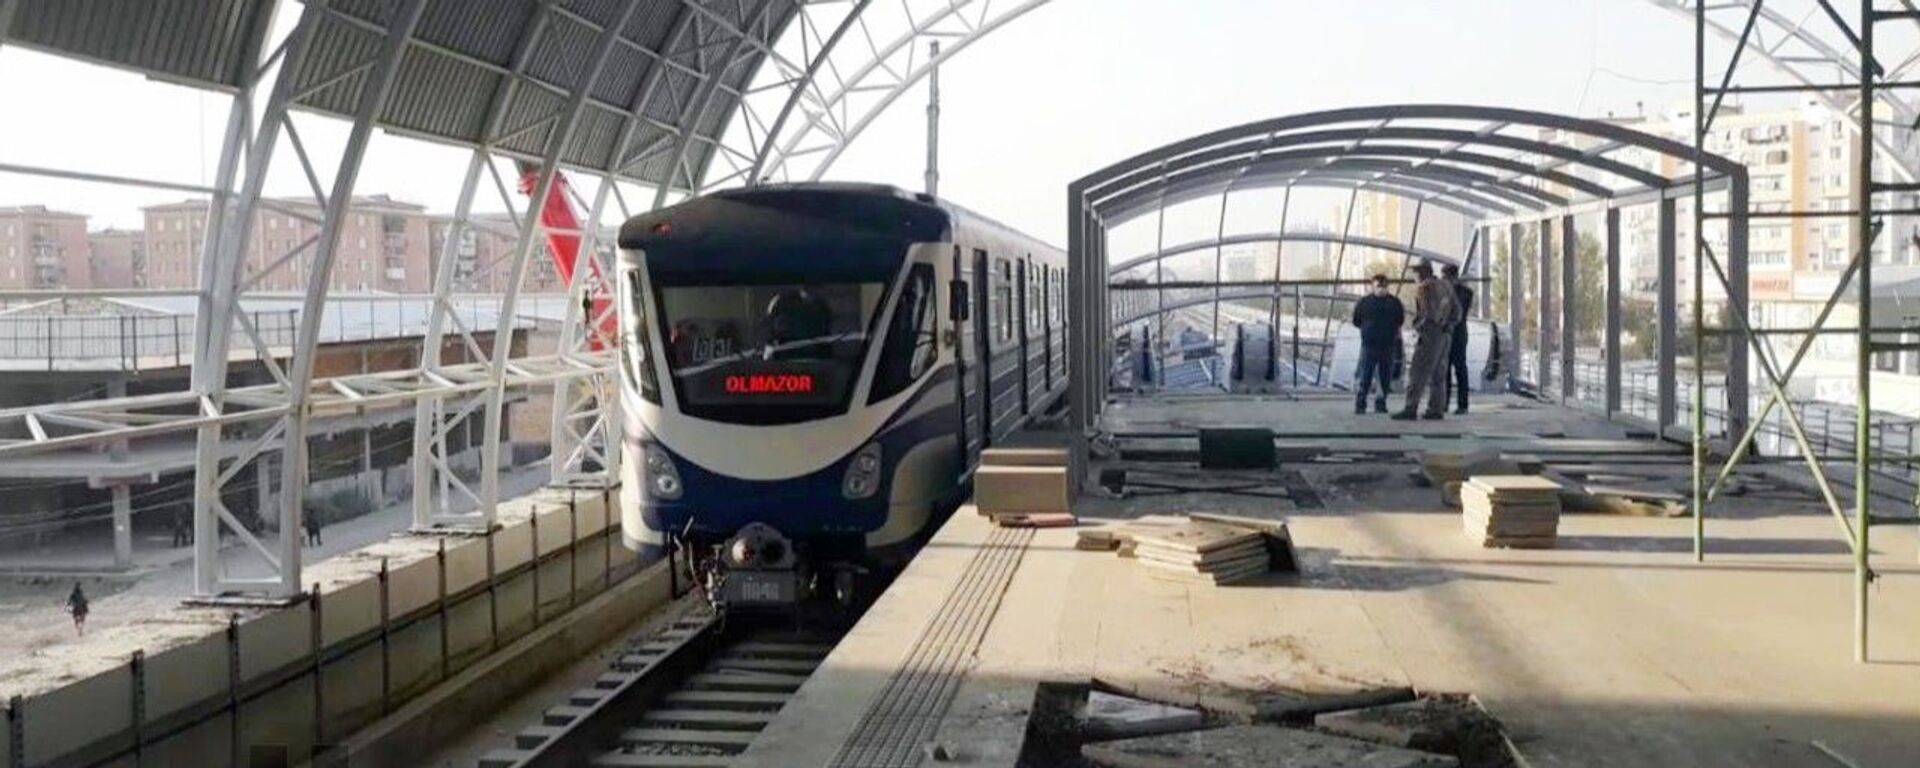 Состоялся тестовый запуск поезда на Сергелийской линии метро - Sputnik Узбекистан, 1920, 06.07.2021